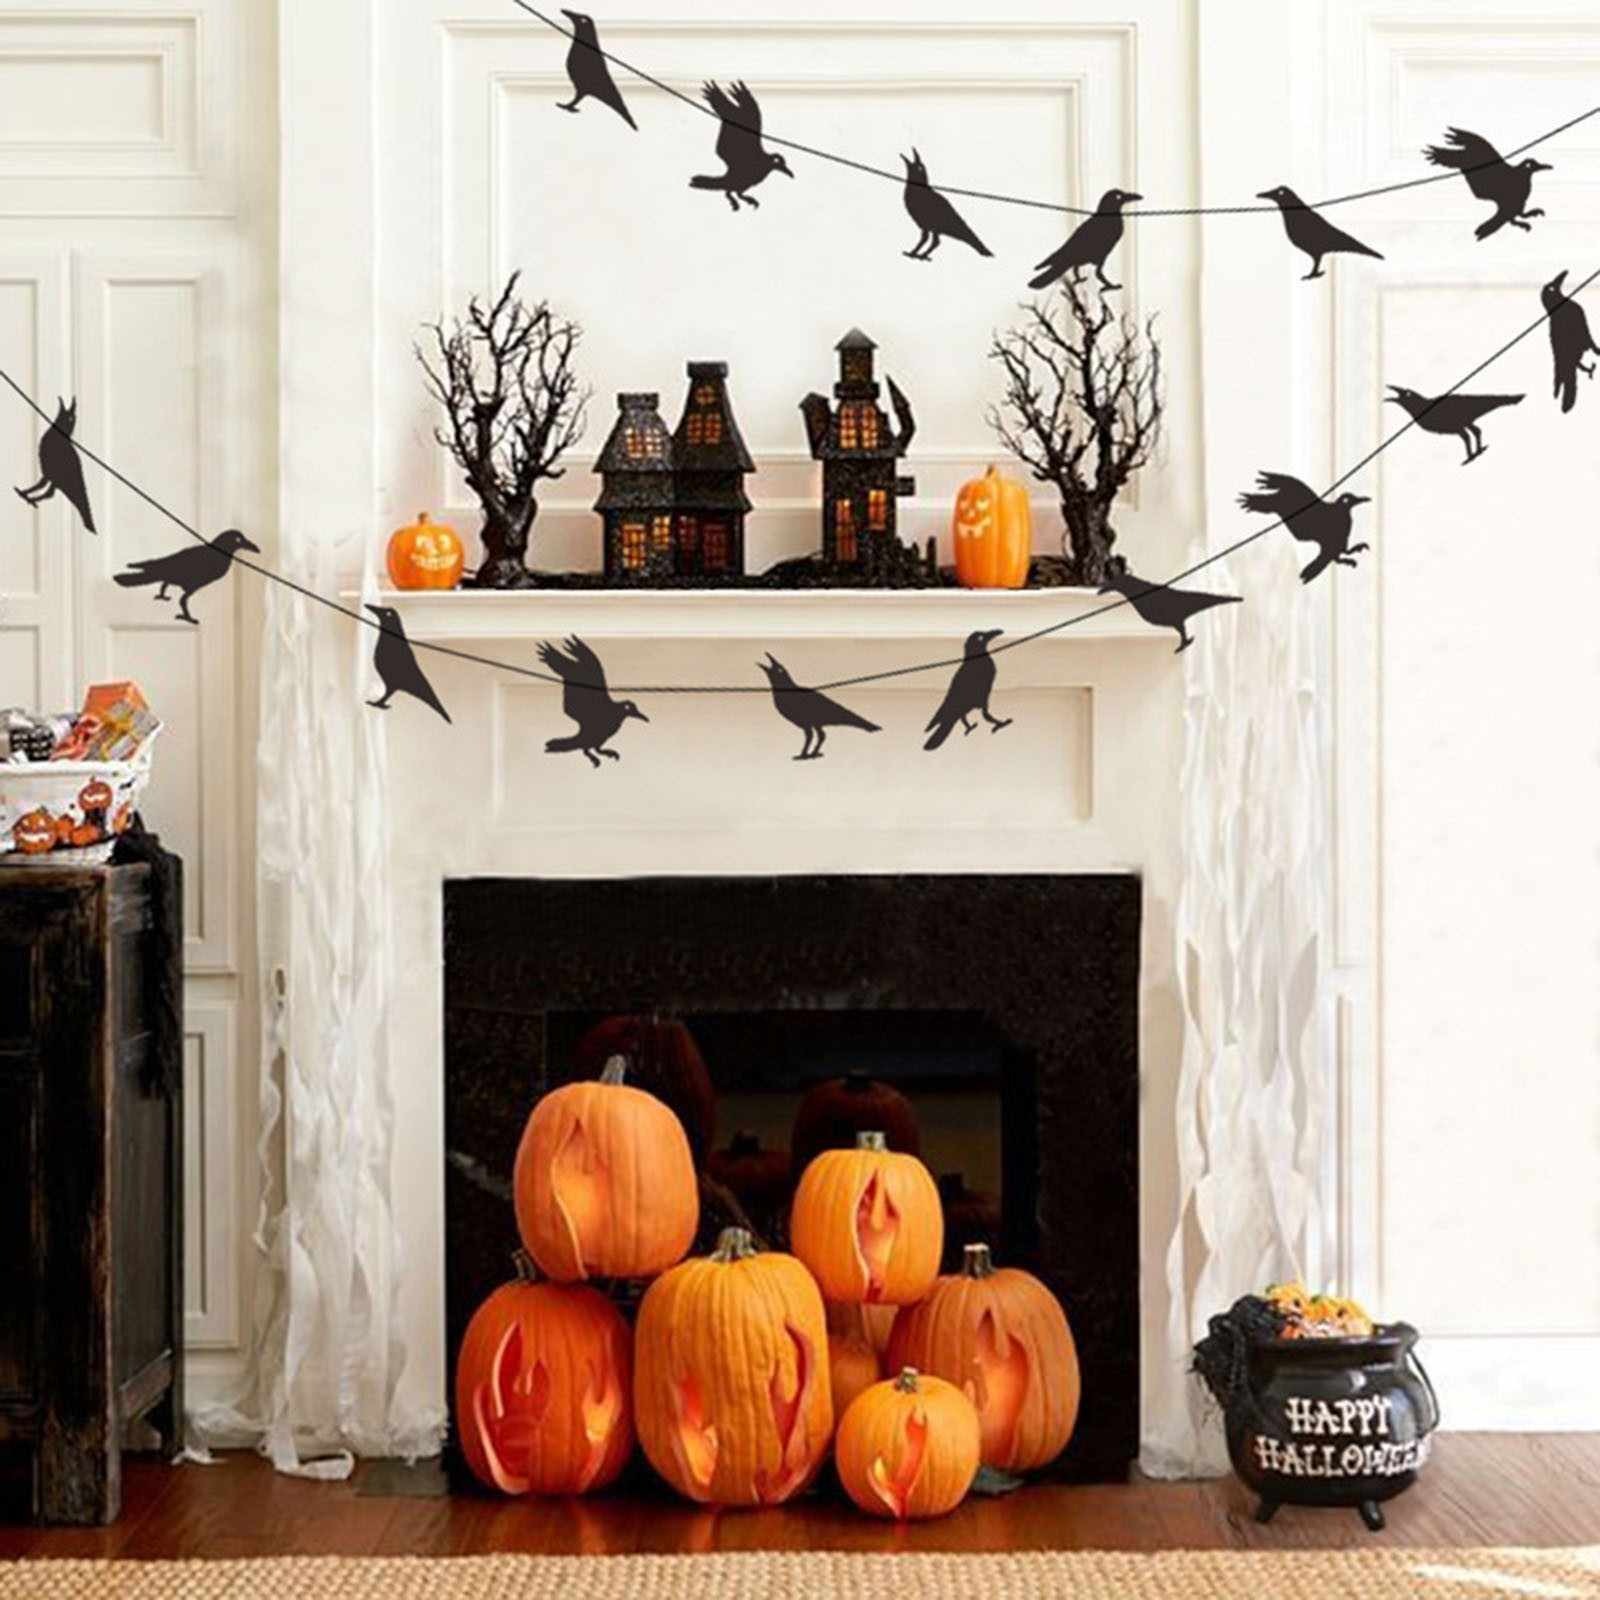 Ghirlanda di corvi neri - decorazione di Halloween